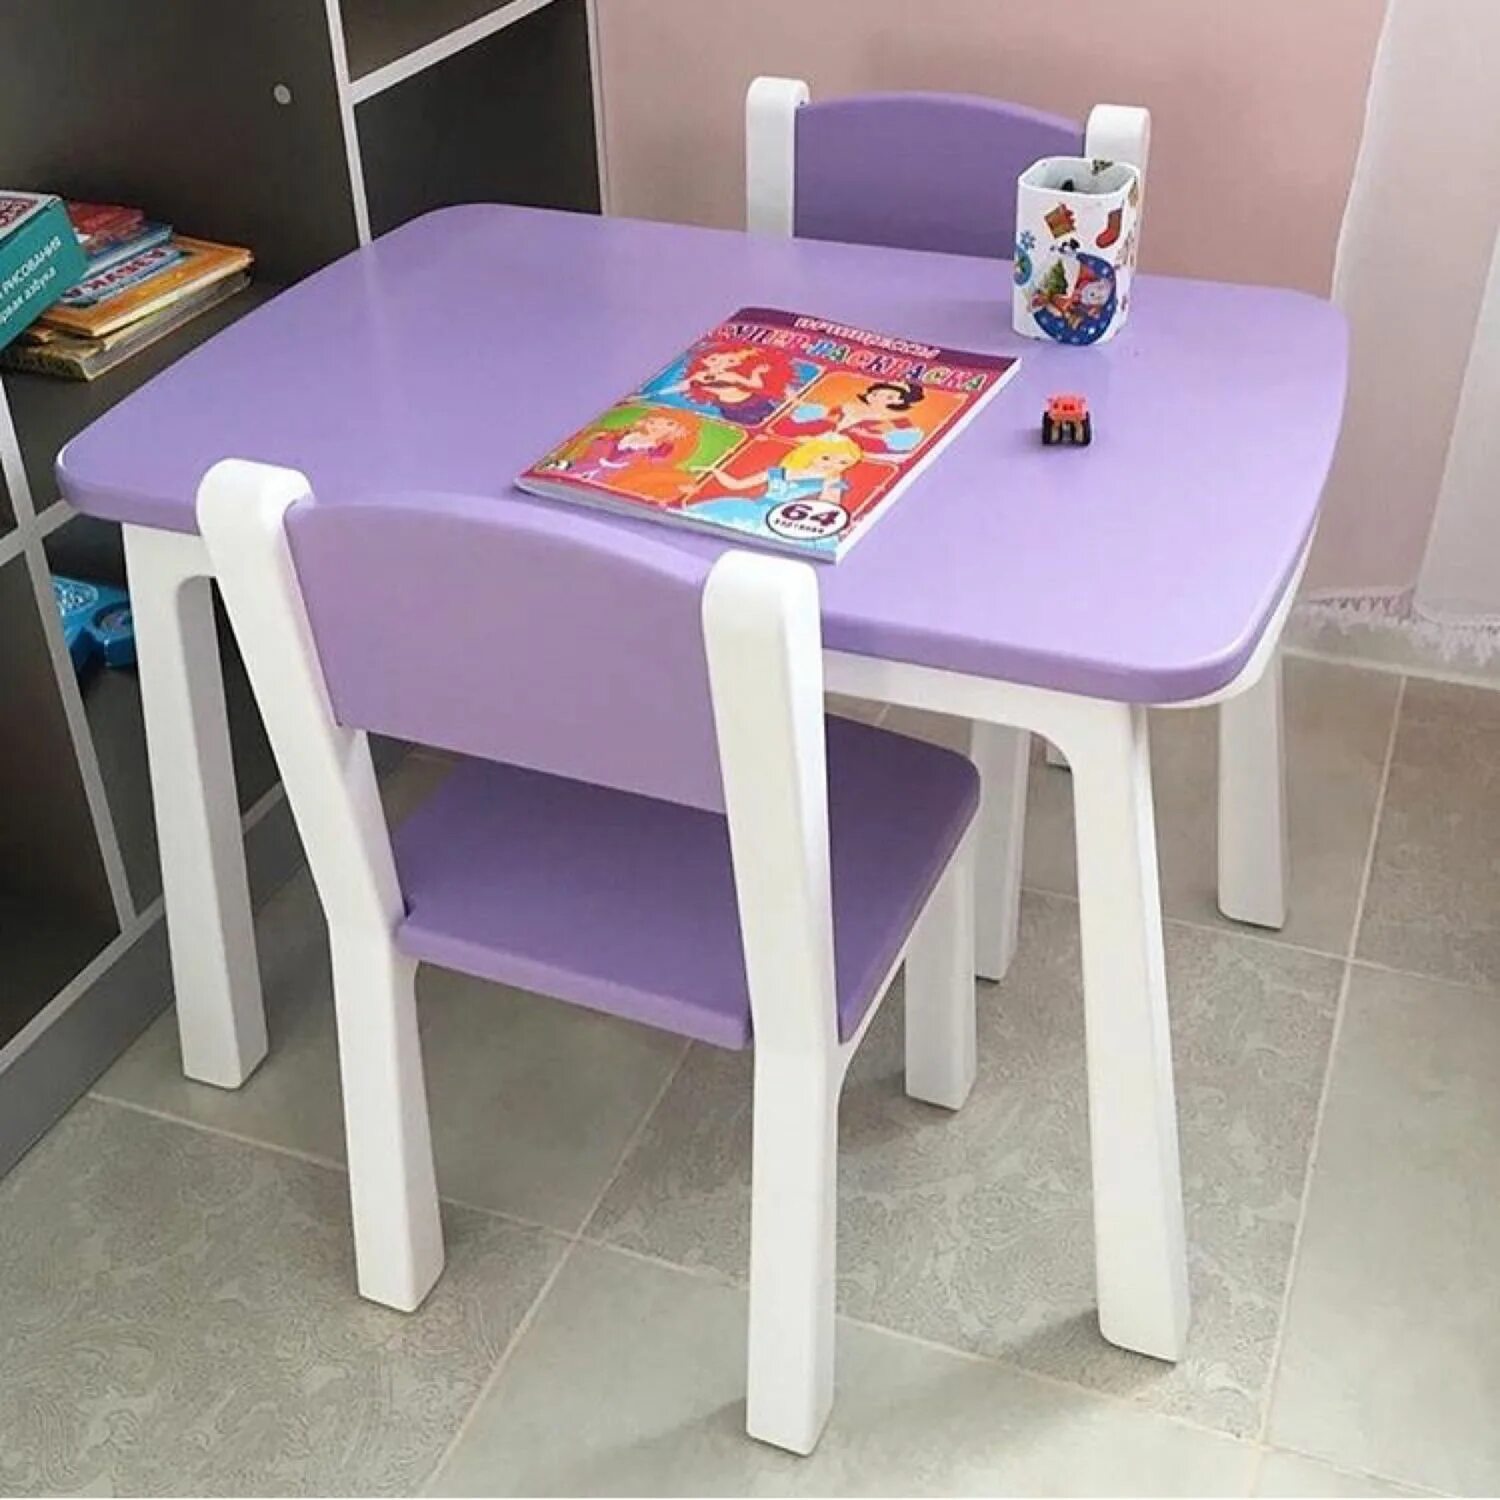 Стол стул где купить. Комплект мебели(стол+2стула) hy012. Комплект kidkraft стол + 2 стула Модерн. Стол детский. Столик и стульчик для детей.